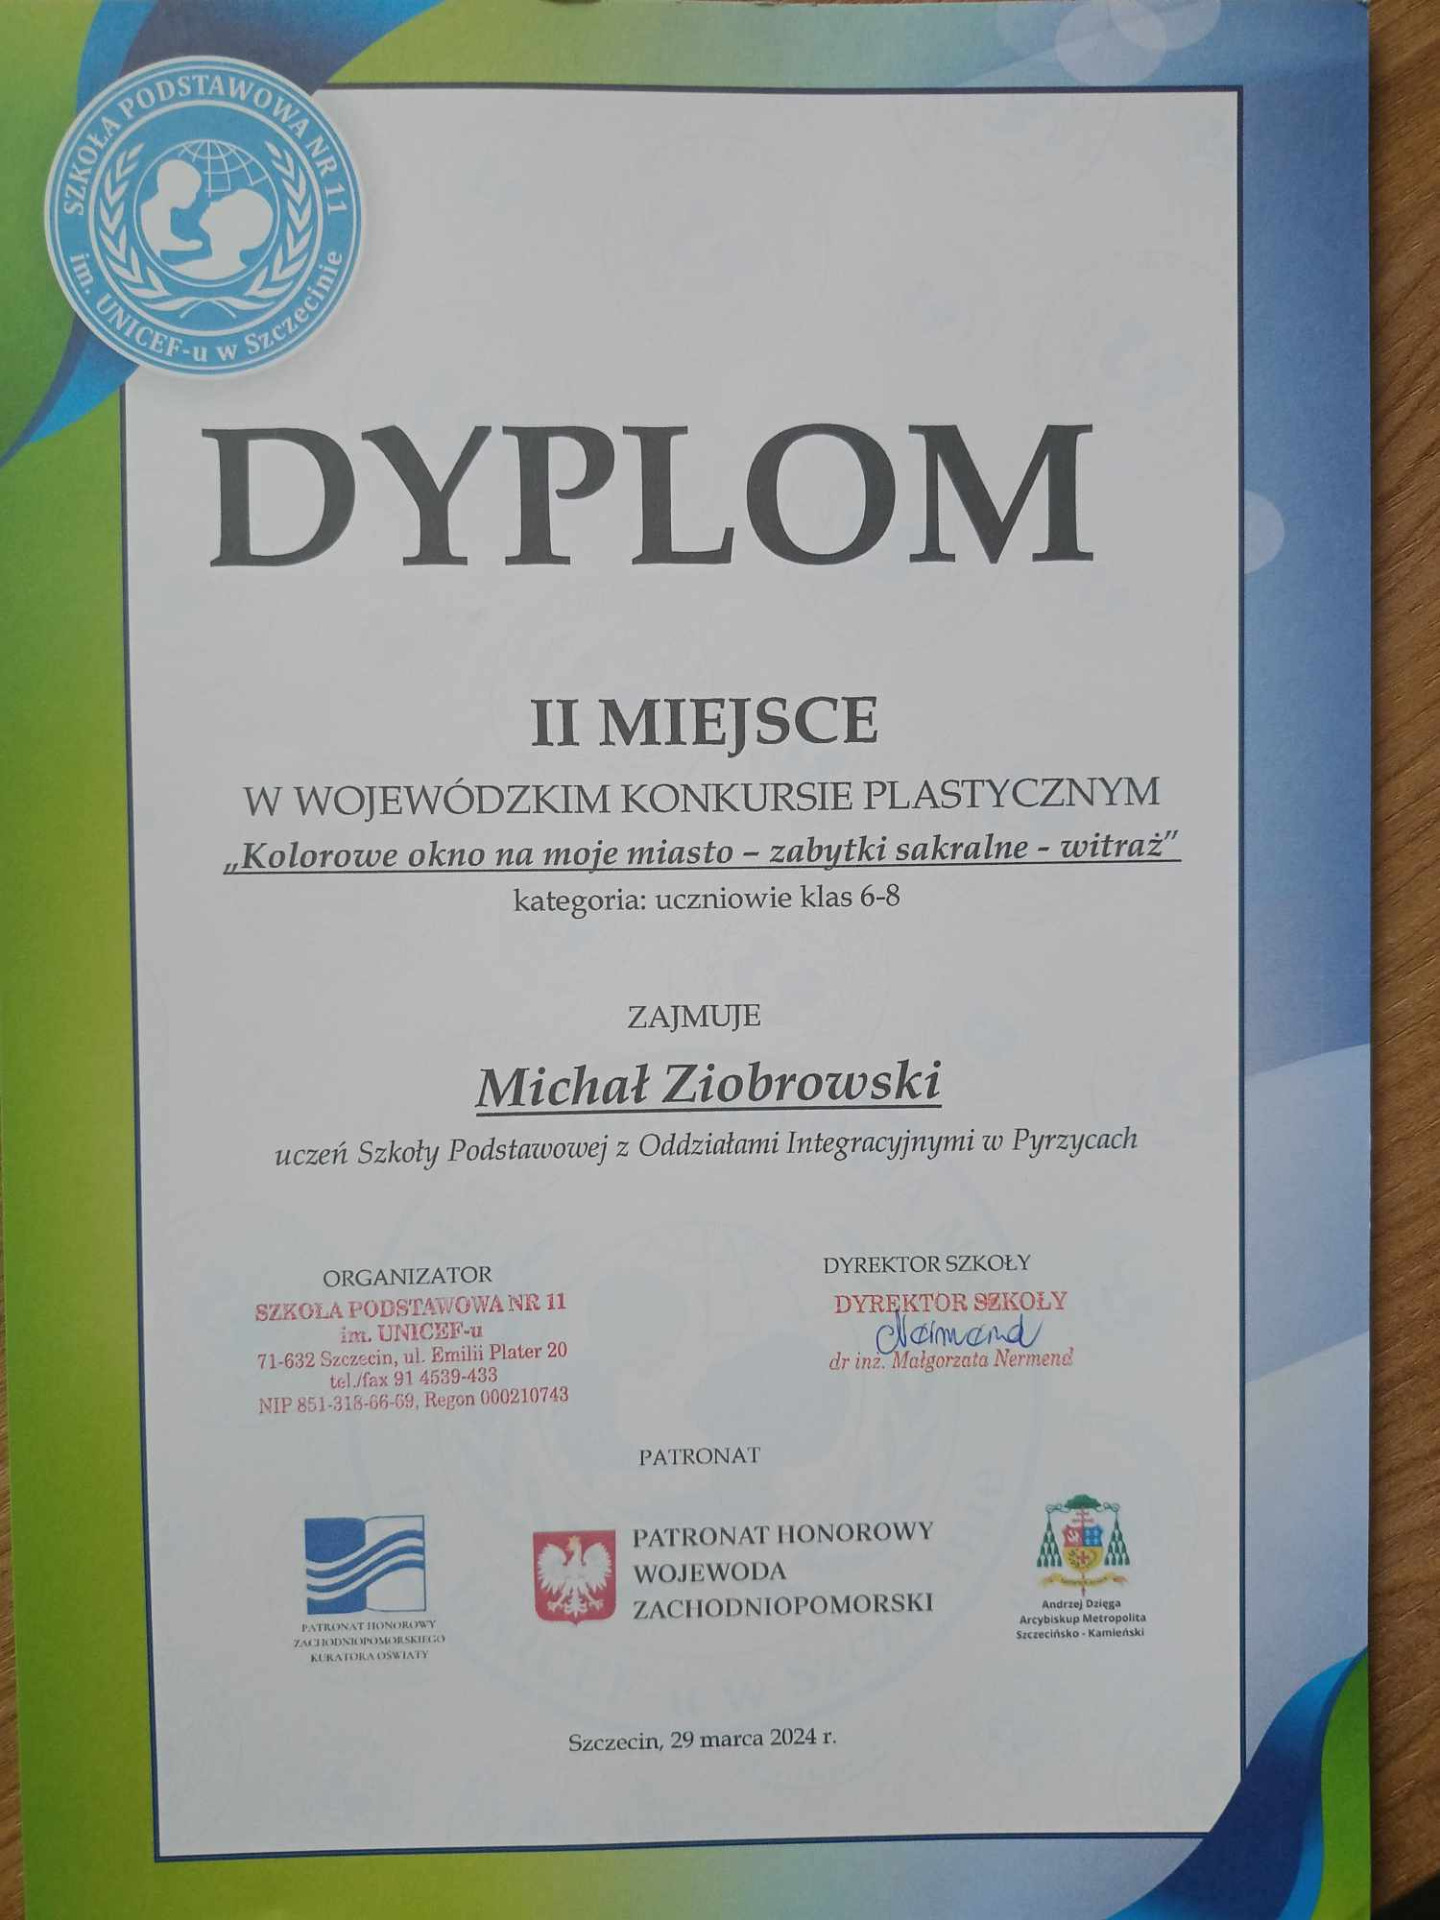 Dyplom dla Michała Ziobrowskiego za zajęcie II miejsca w Wojewódzkim Konkursie Plastycznym "Kolorowe okna na moje miasto- witraż".